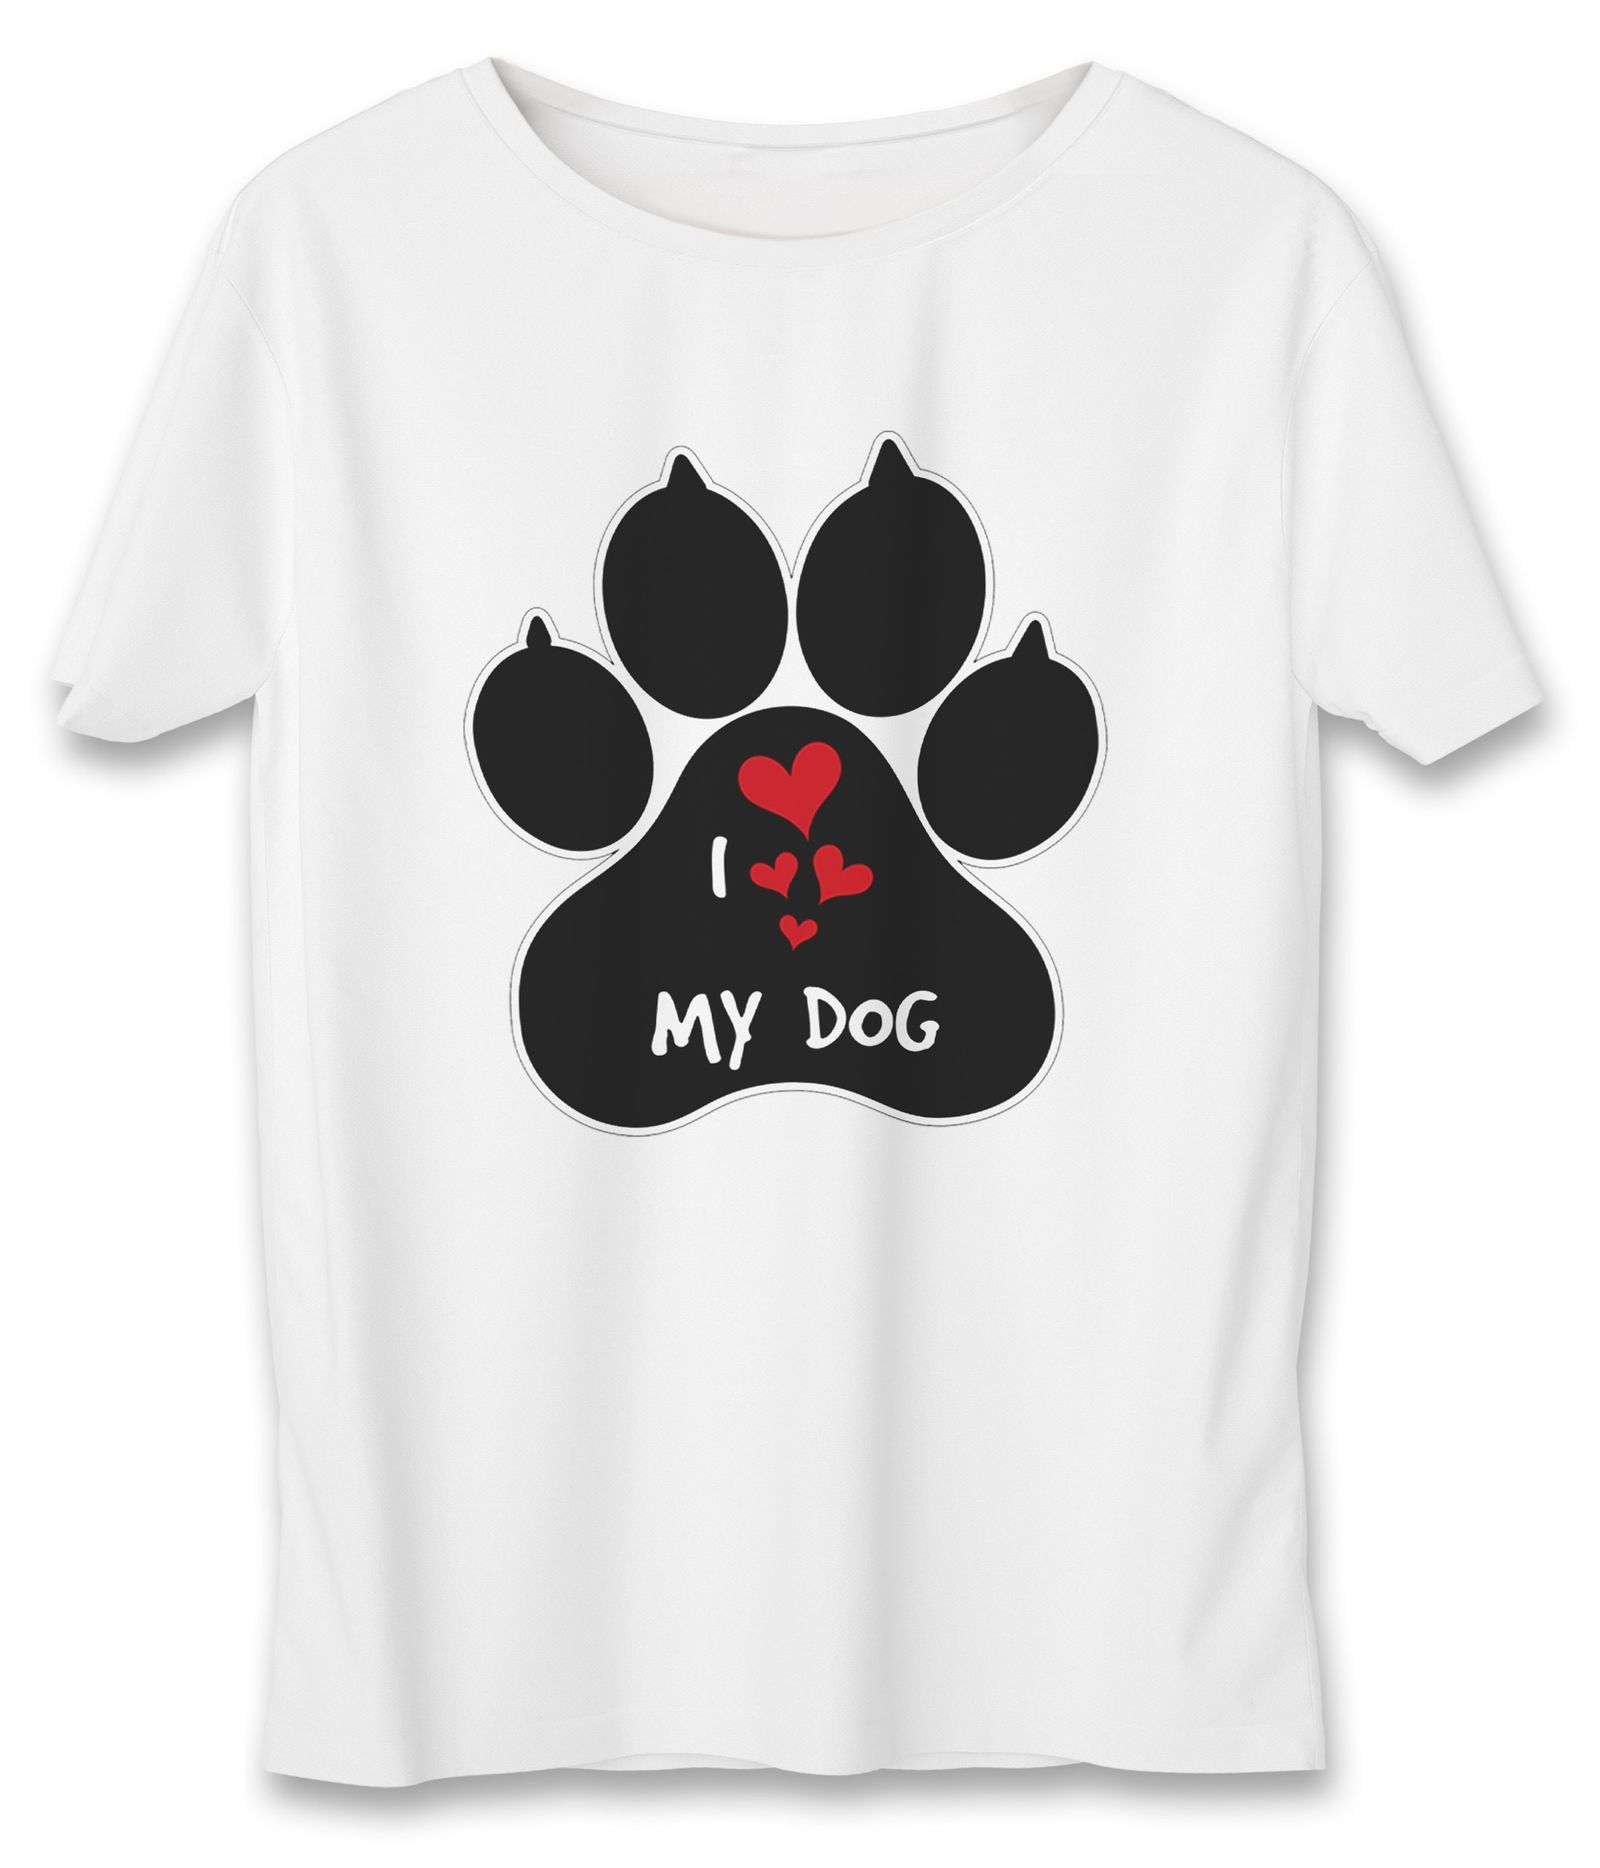 تی شرت زنانه به رسم طرح عشق سگ کد5502 -  - 1